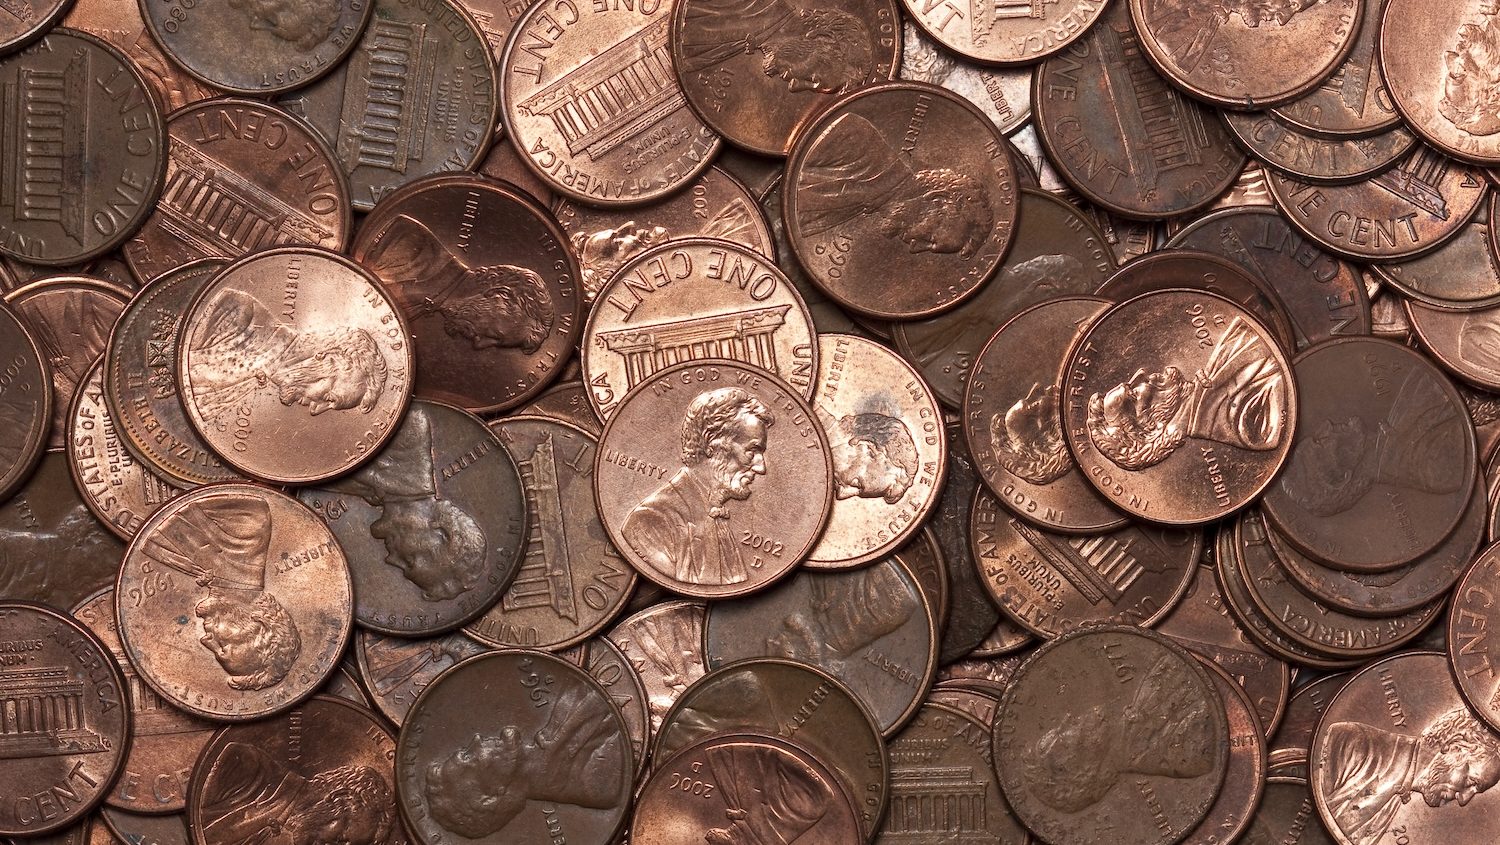 Así es la moneda de 1 centavo que podría valer hasta $300,000 dólares – La Opinión